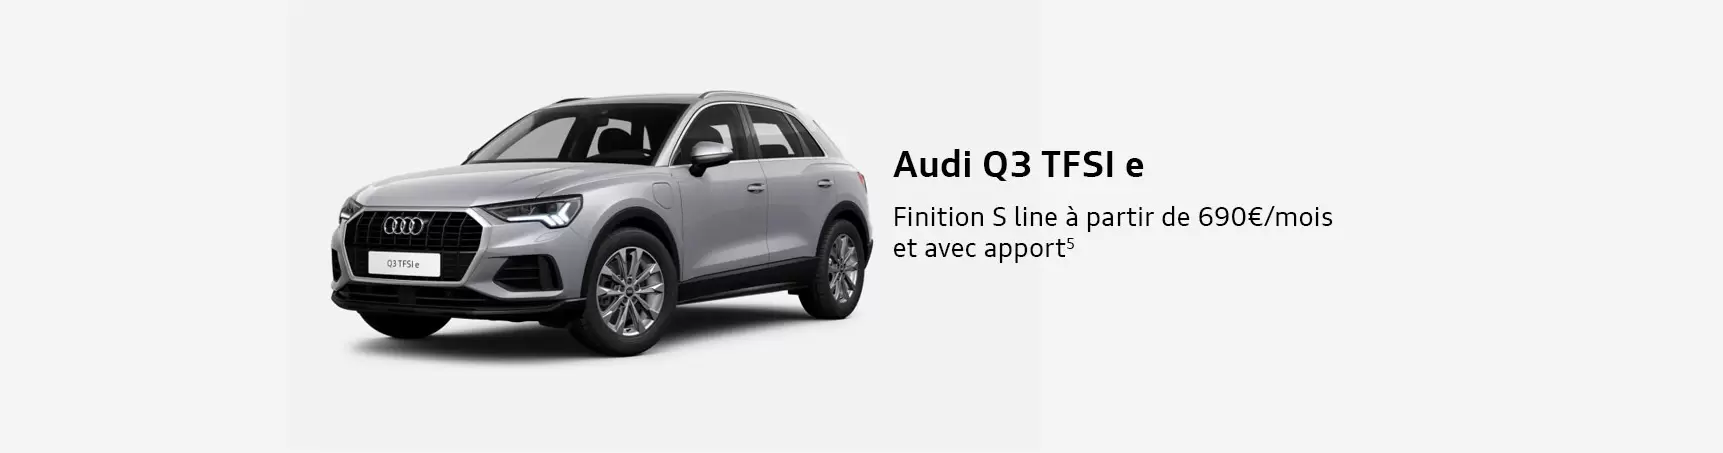 Audi q3 tfsi